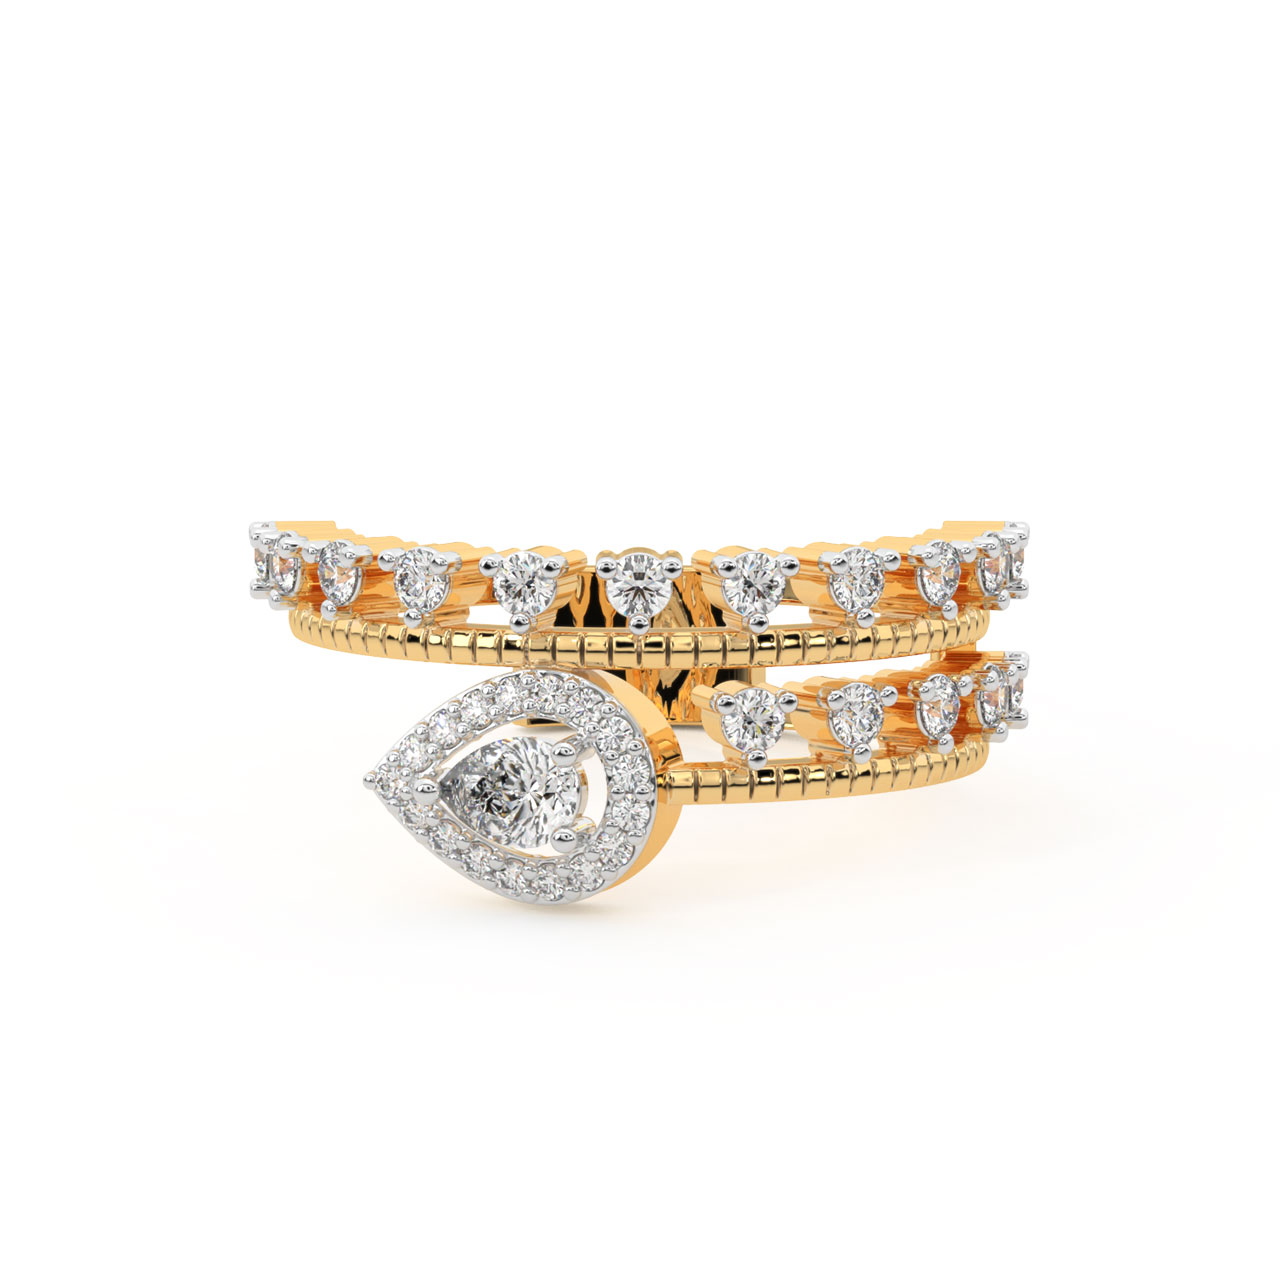 Sheena Round Diamond Engagement Ring